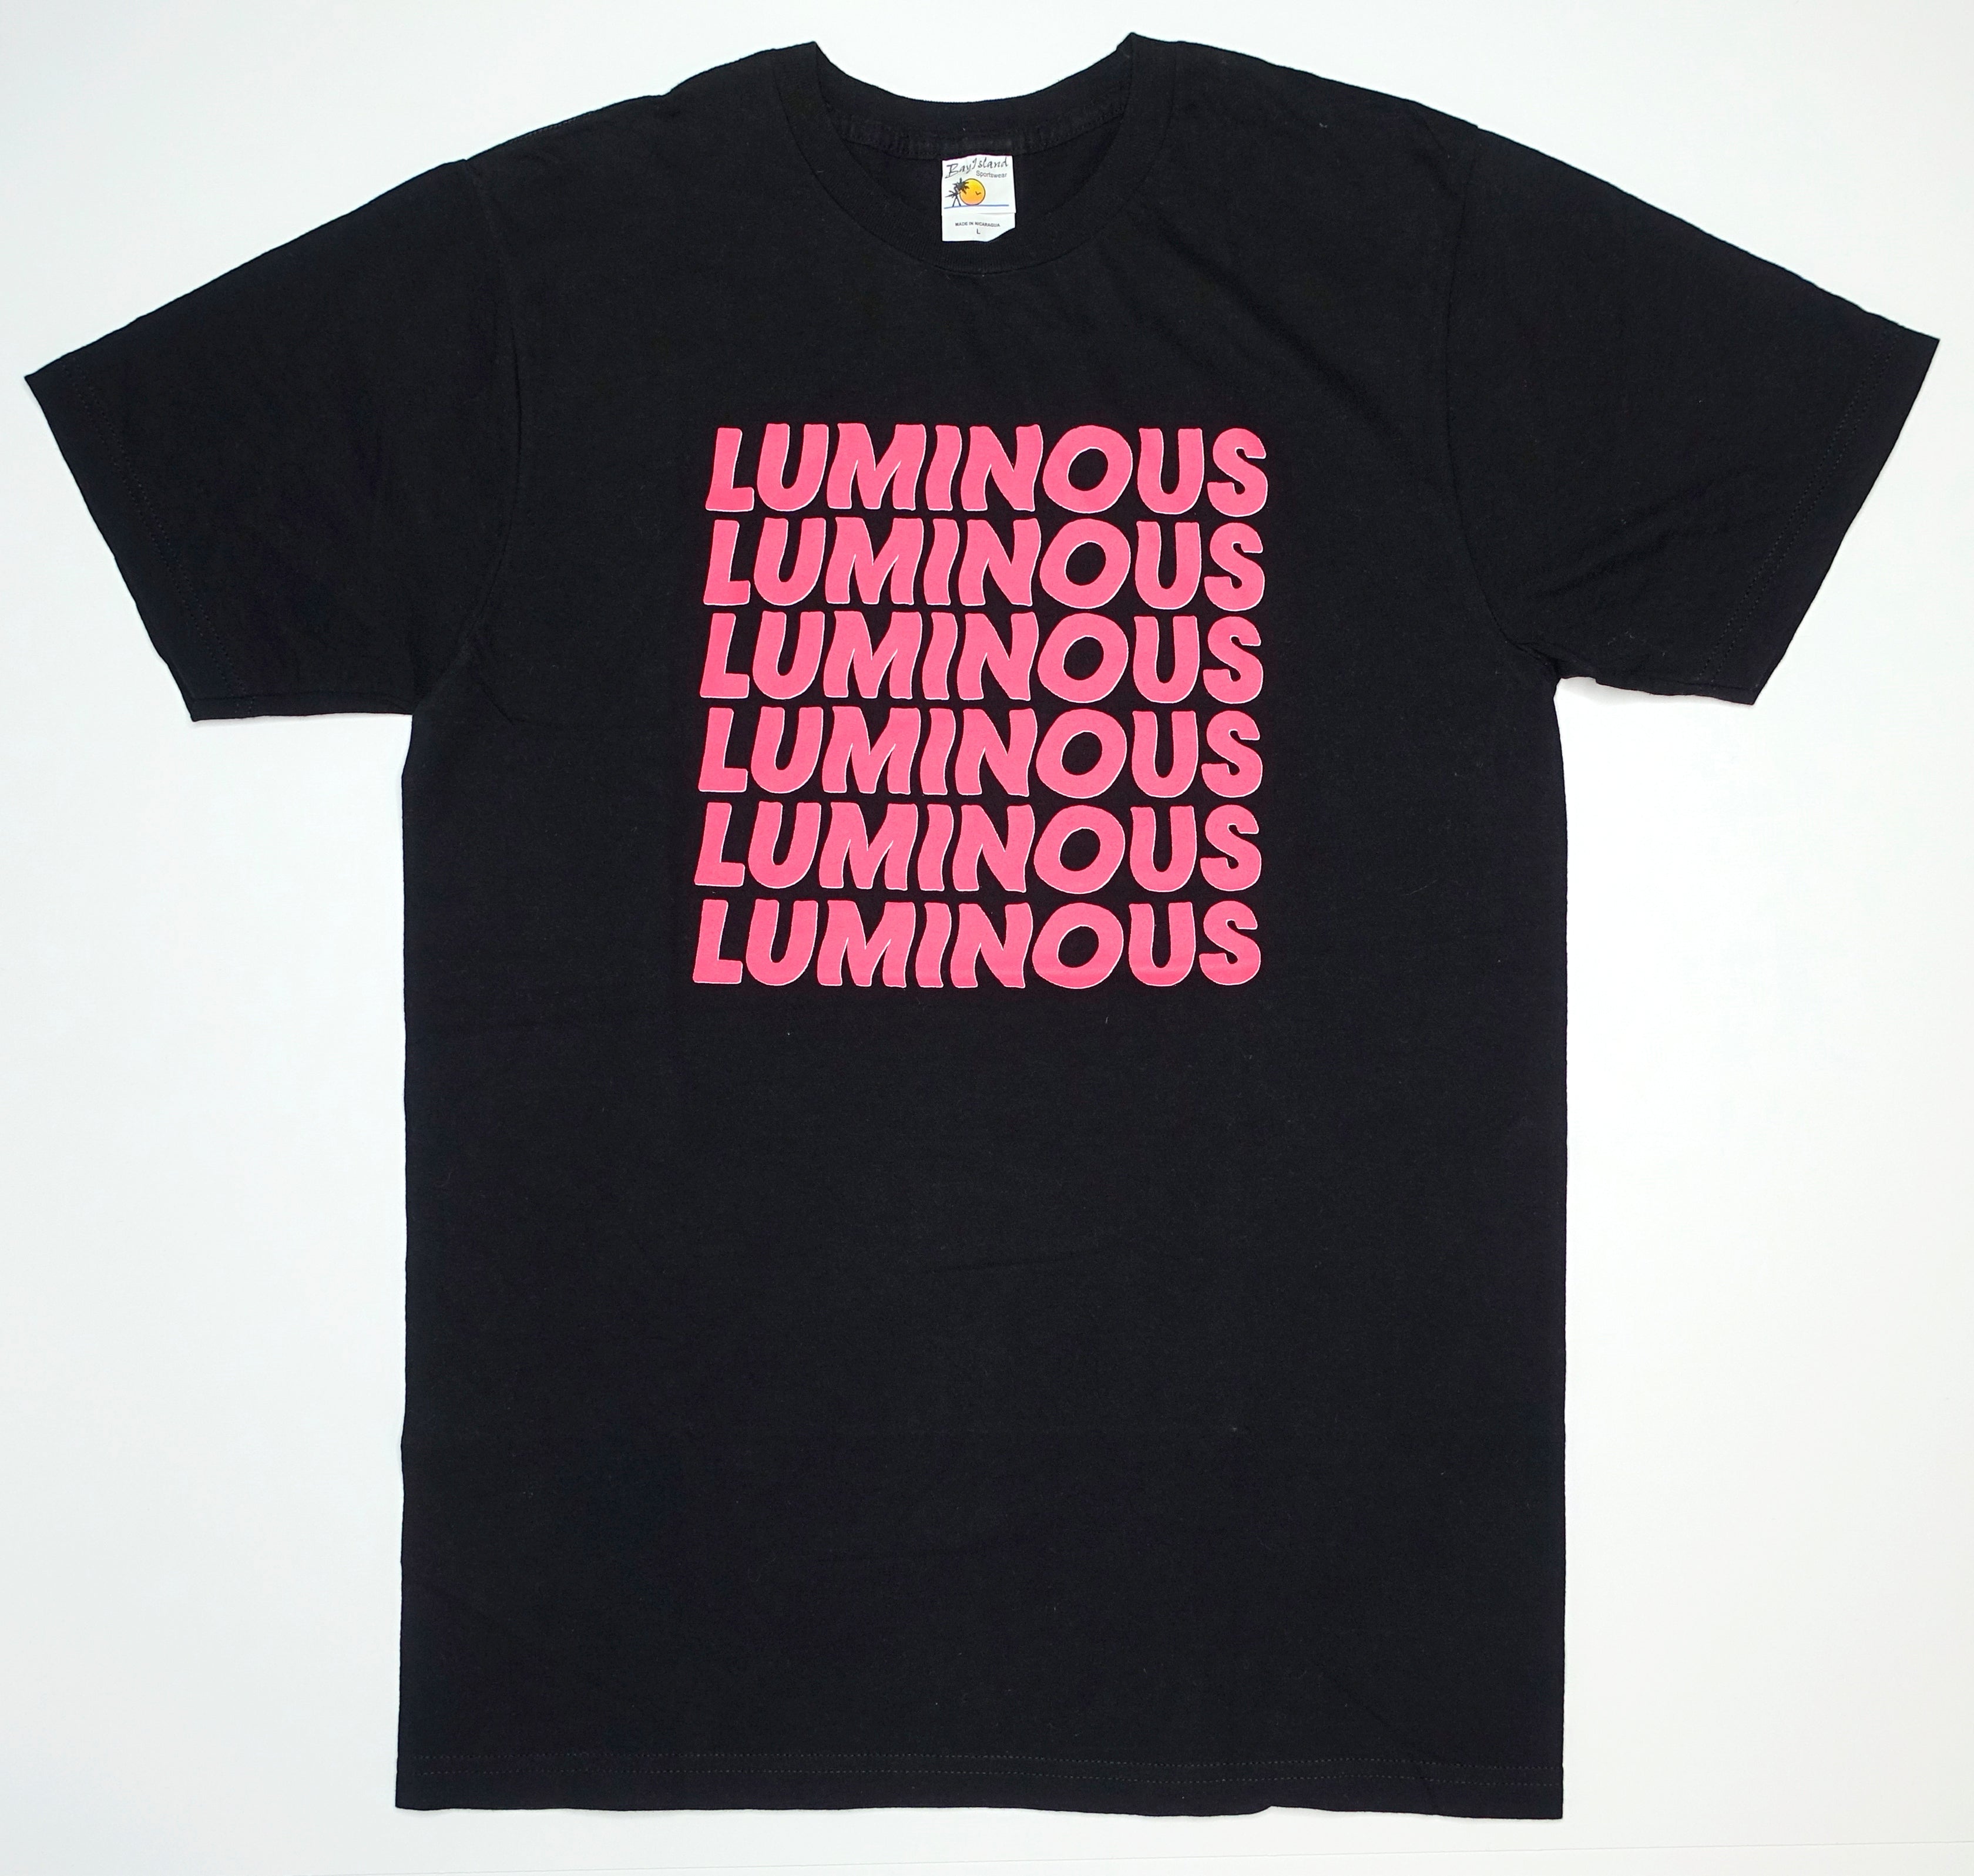 the Horrors - Luminous 2014 Tour Shirt Size Large